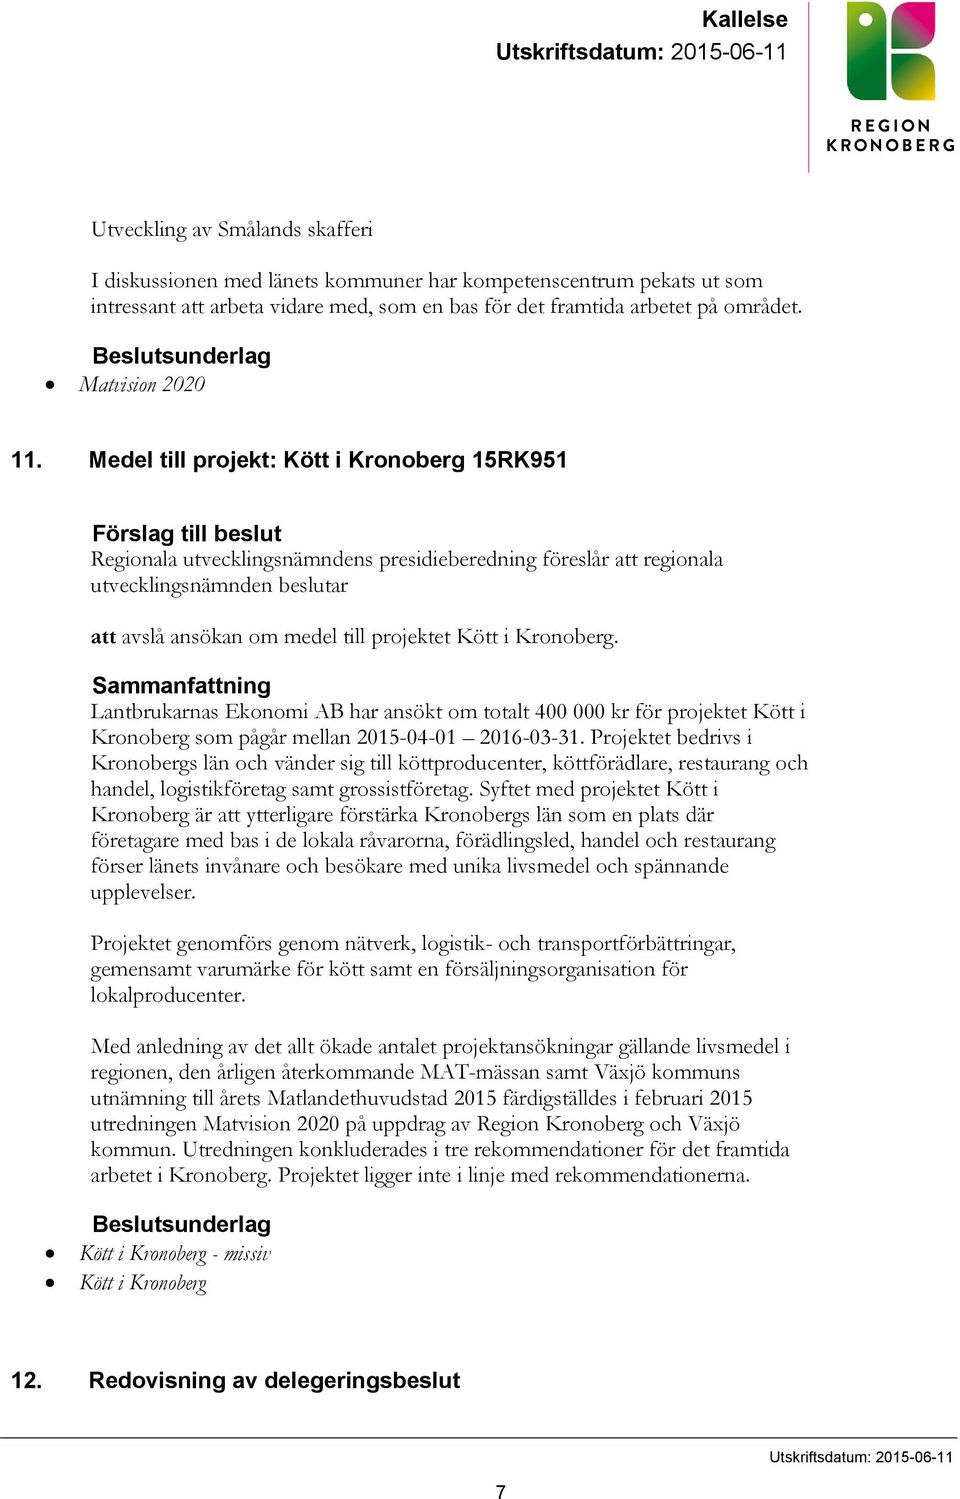 Medel till projekt: Kött i Kronoberg 15RK951 Förslag till beslut Regionala utvecklingsnämndens presidieberedning föreslår att regionala utvecklingsnämnden beslutar att avslå ansökan om medel till